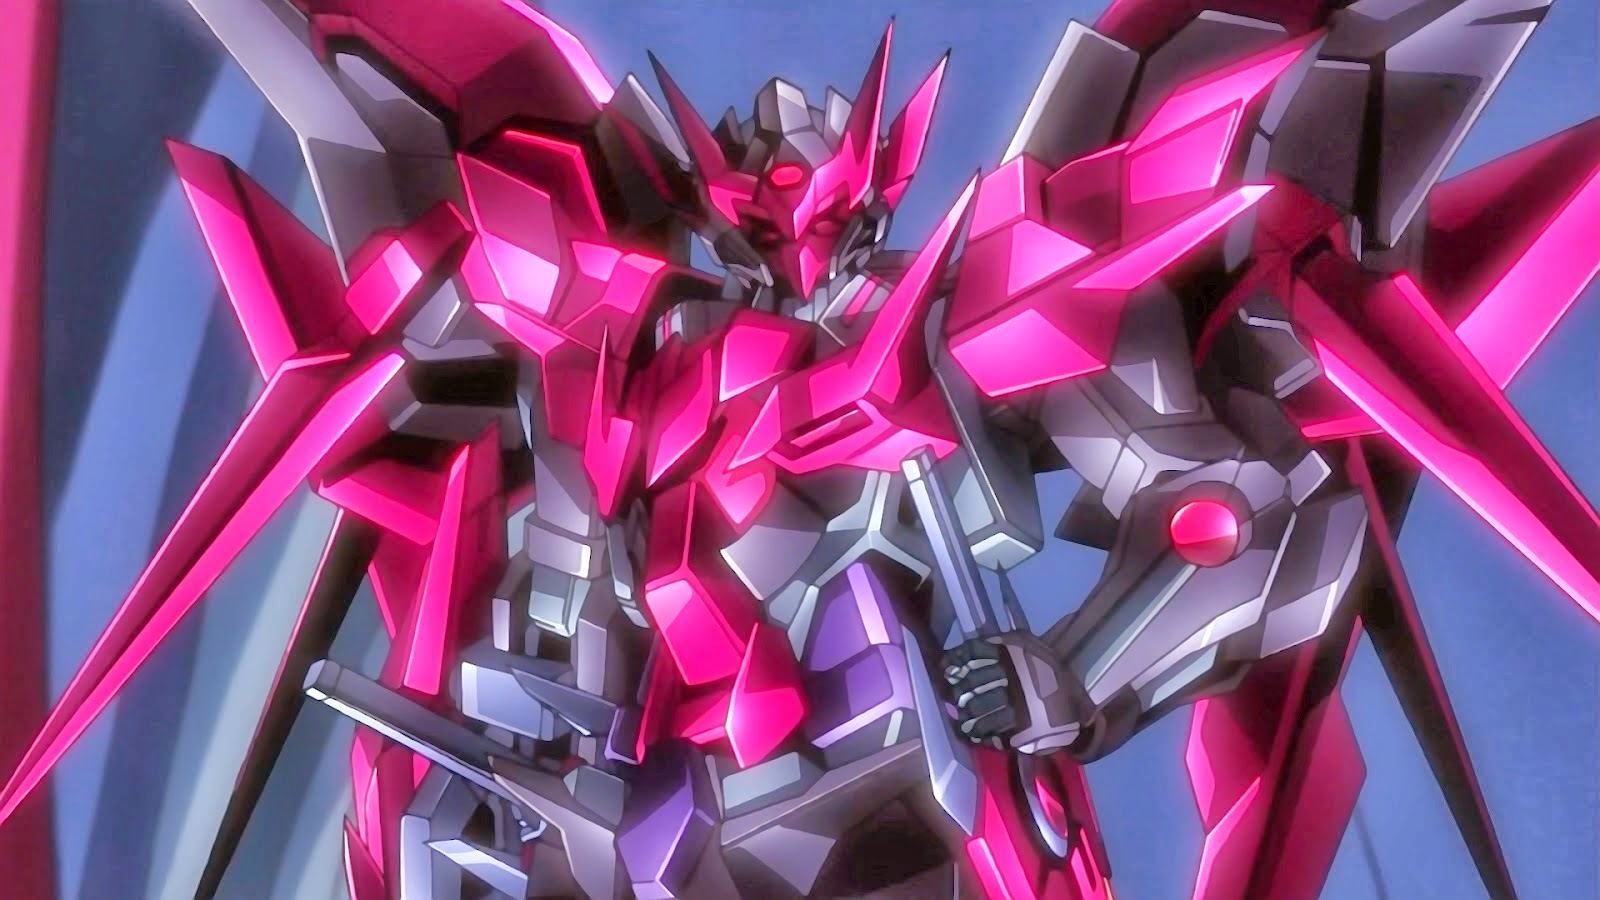 Gundam Exia Wallpaper